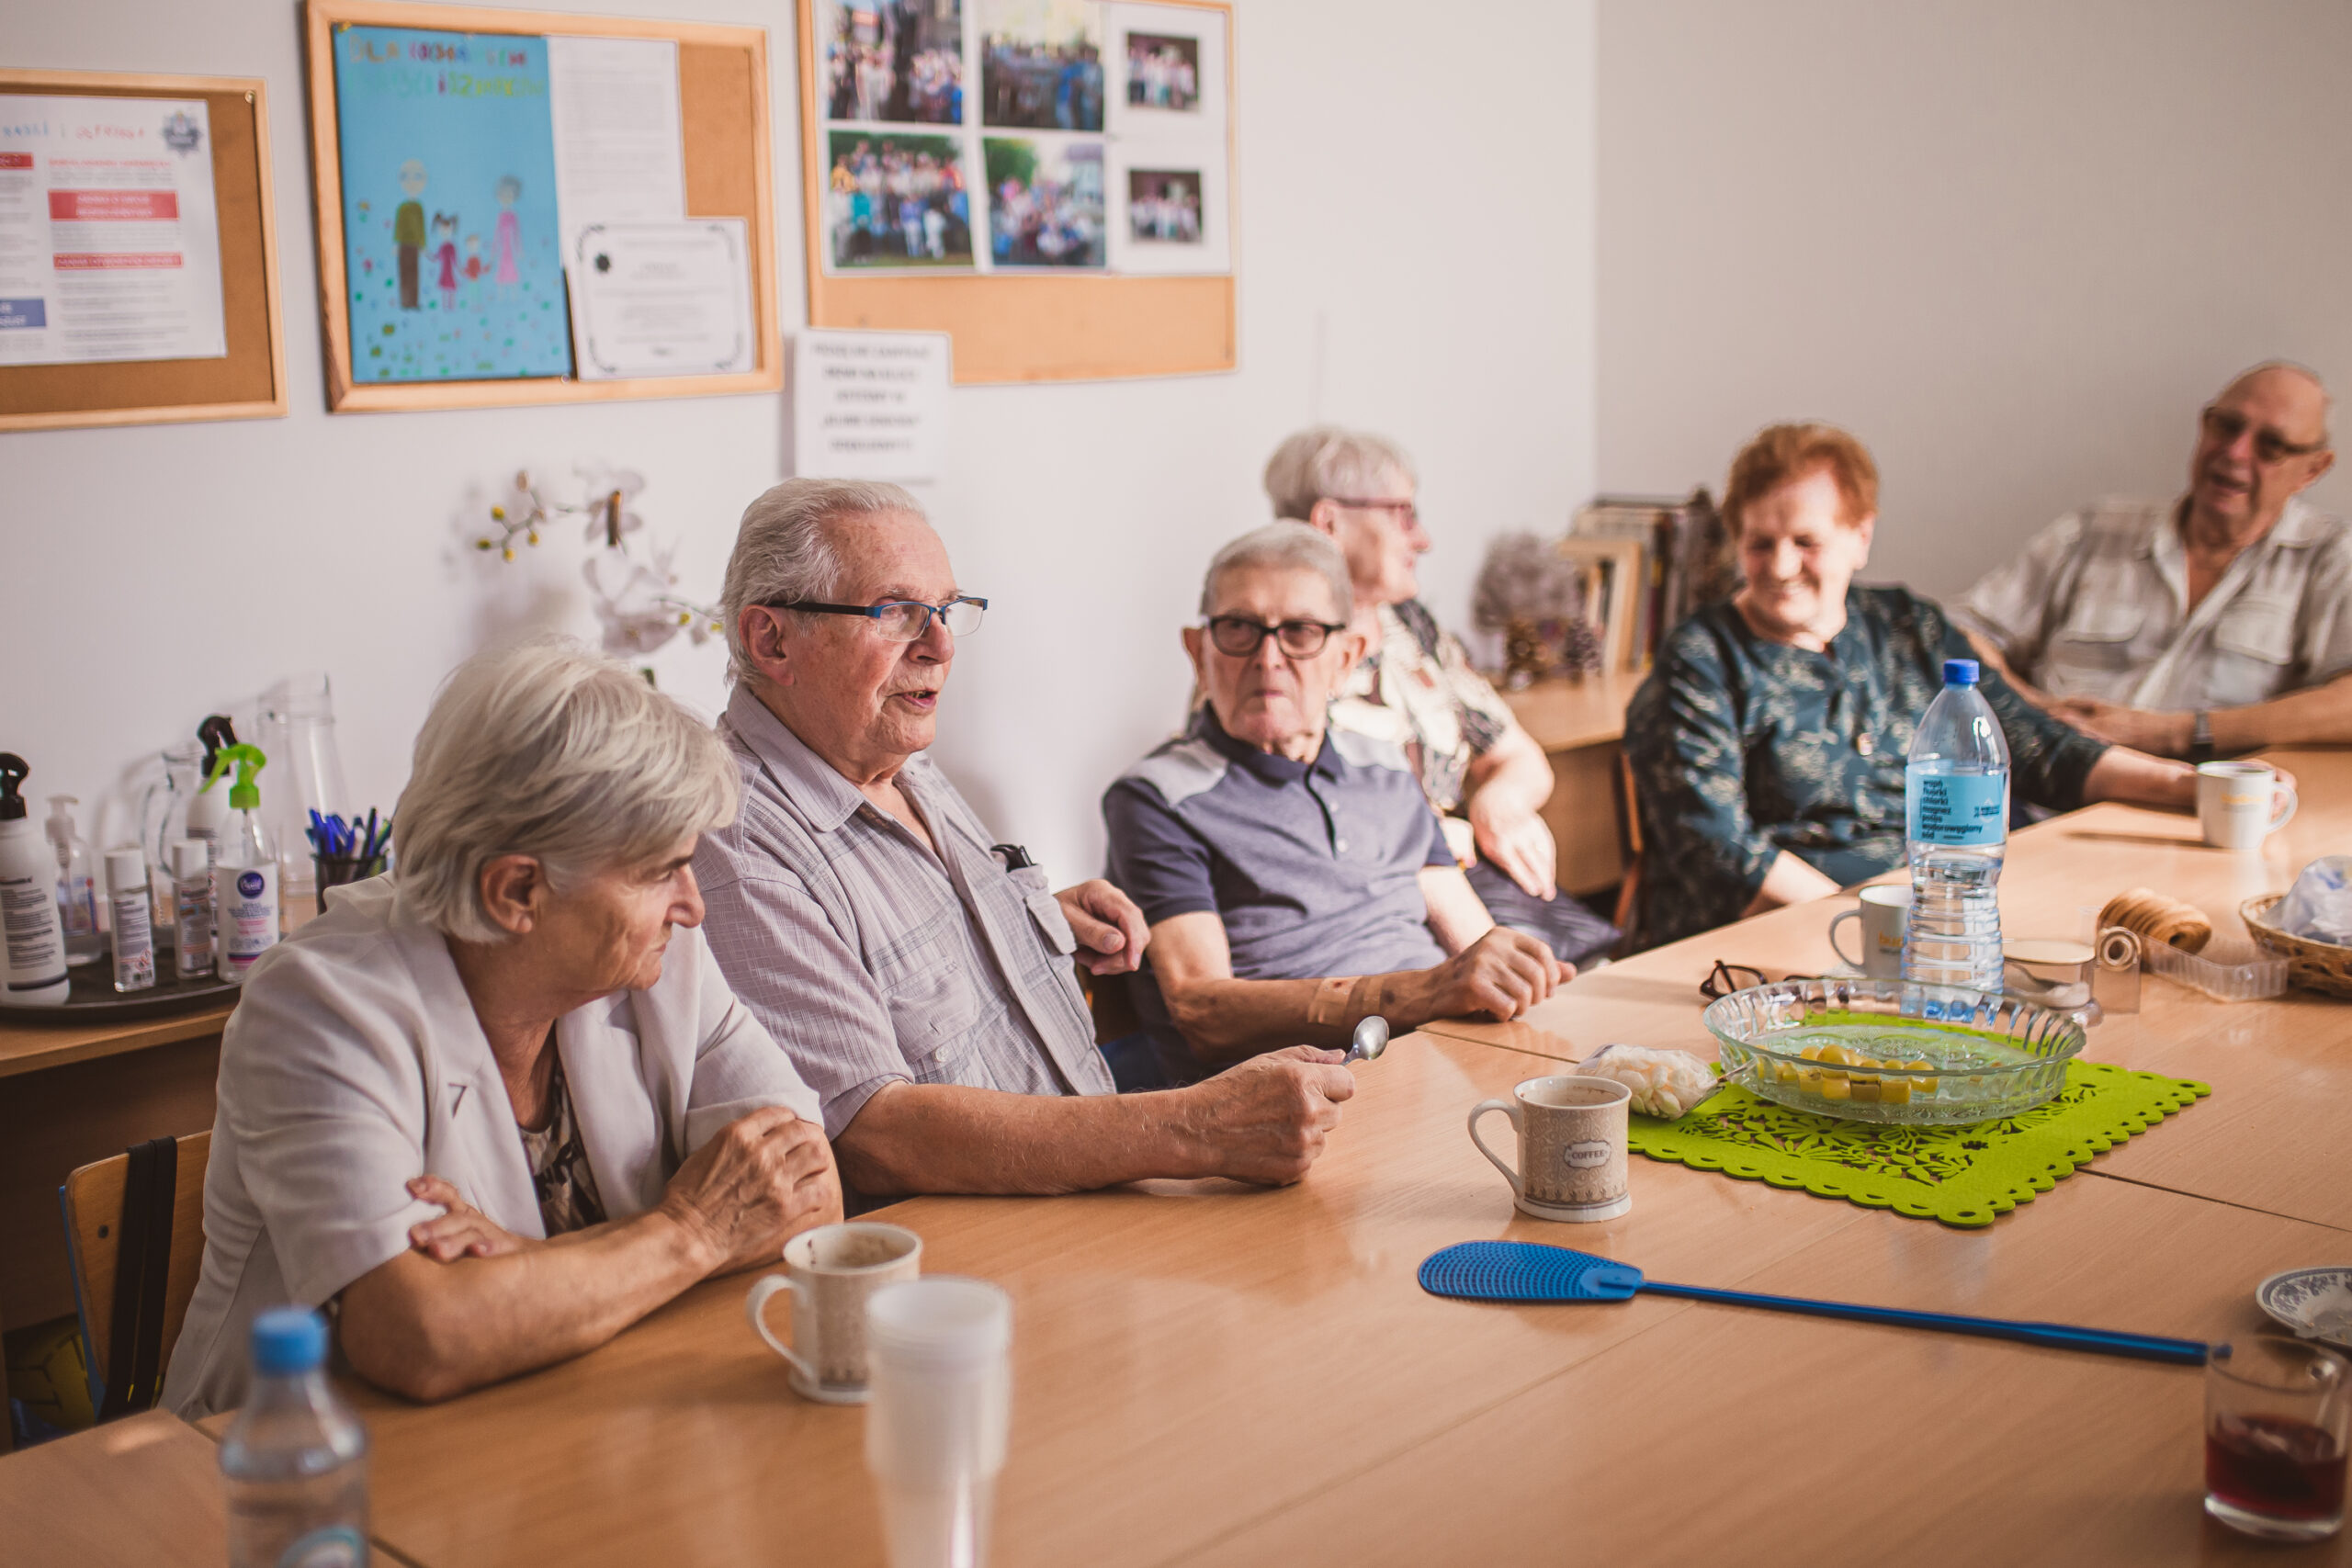 zdjęcie przedstawia grupę sześciorga seniorów siedzących przy stole i rozmawiających podczas warsztatów poste restante